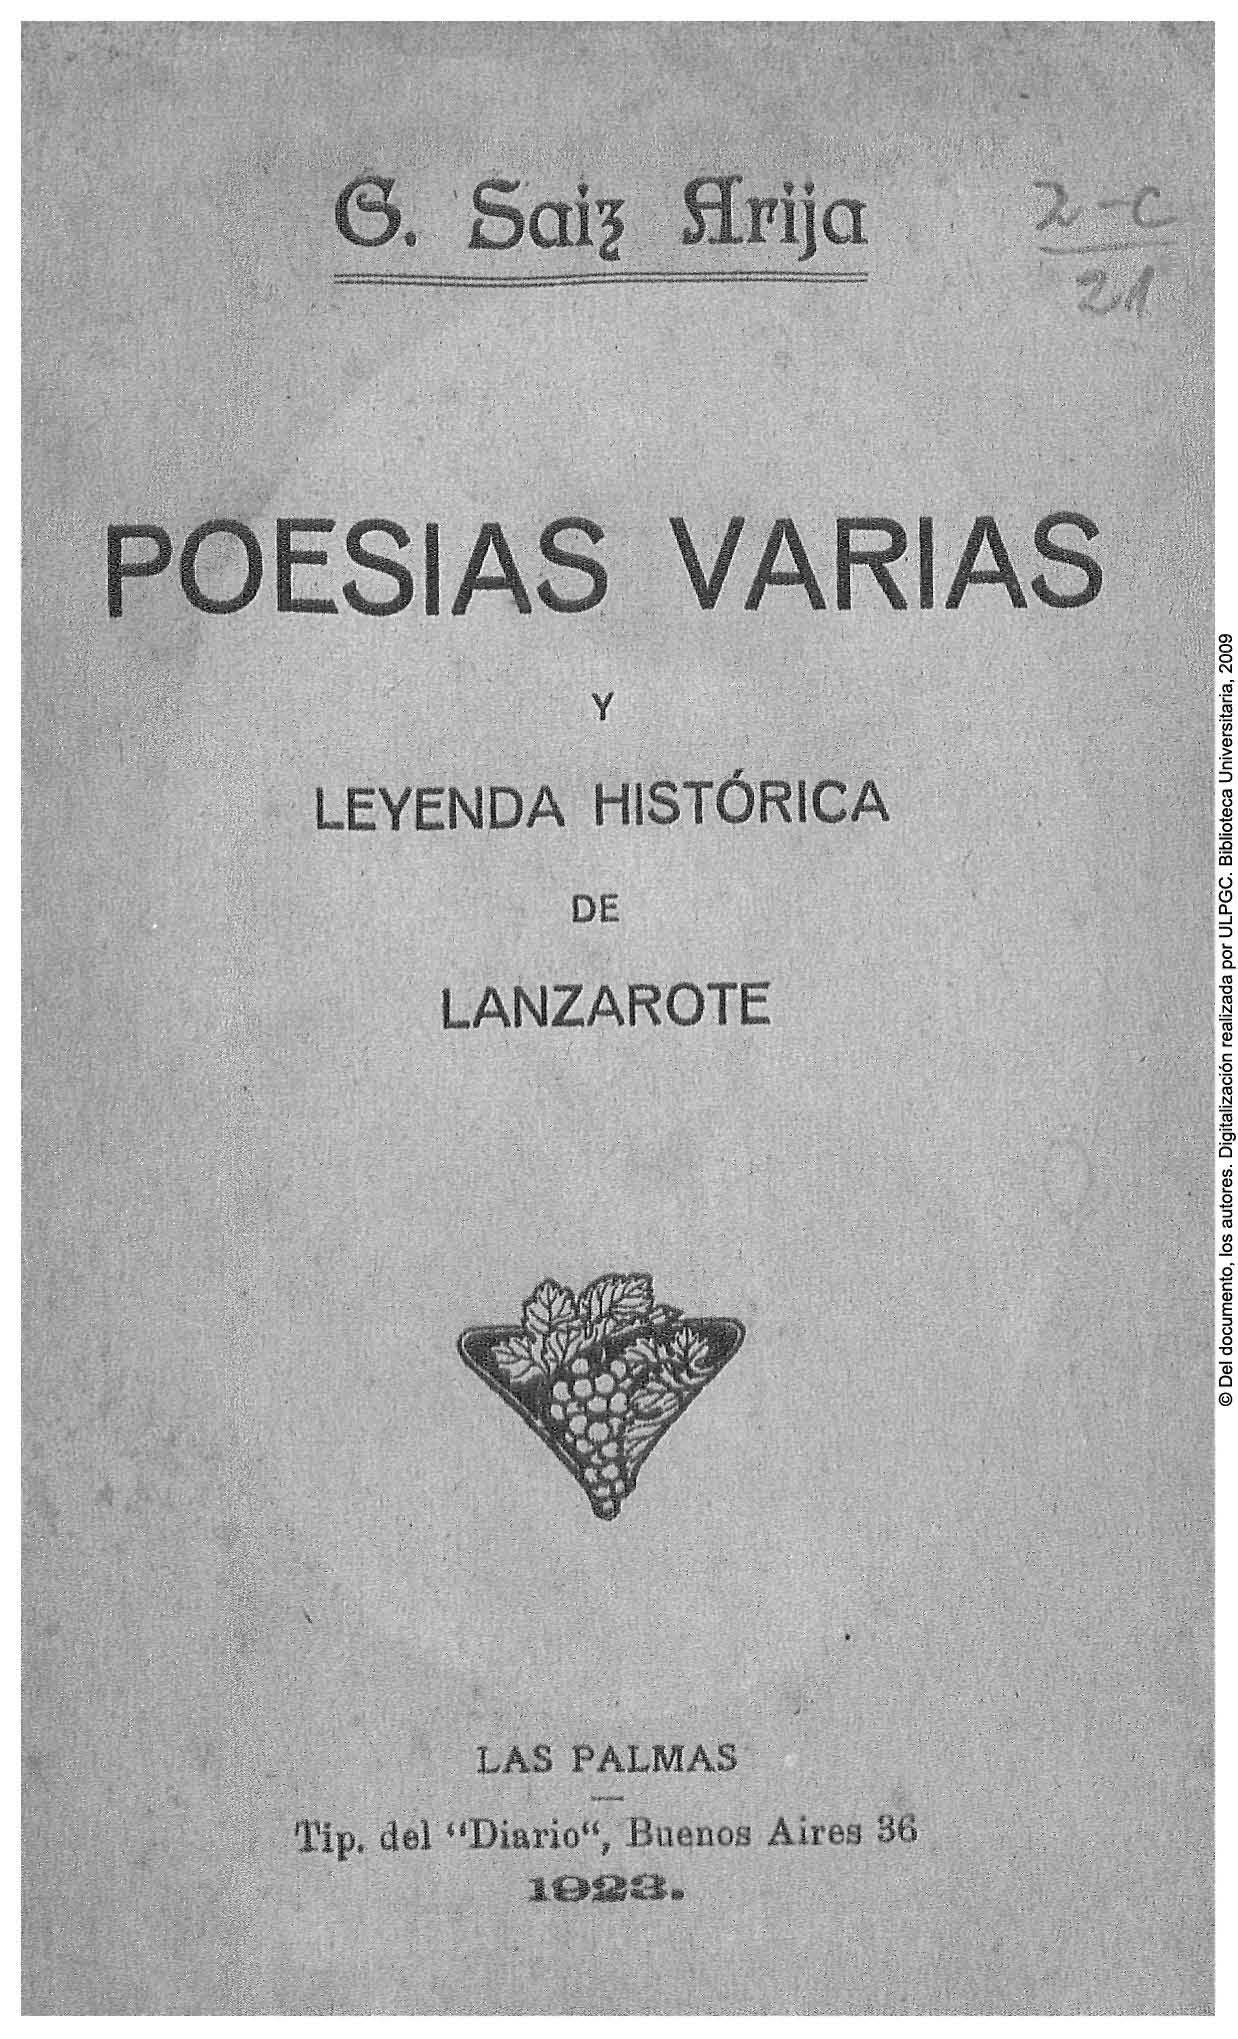 Poesías varias y leyenda histórica de Lanzarote